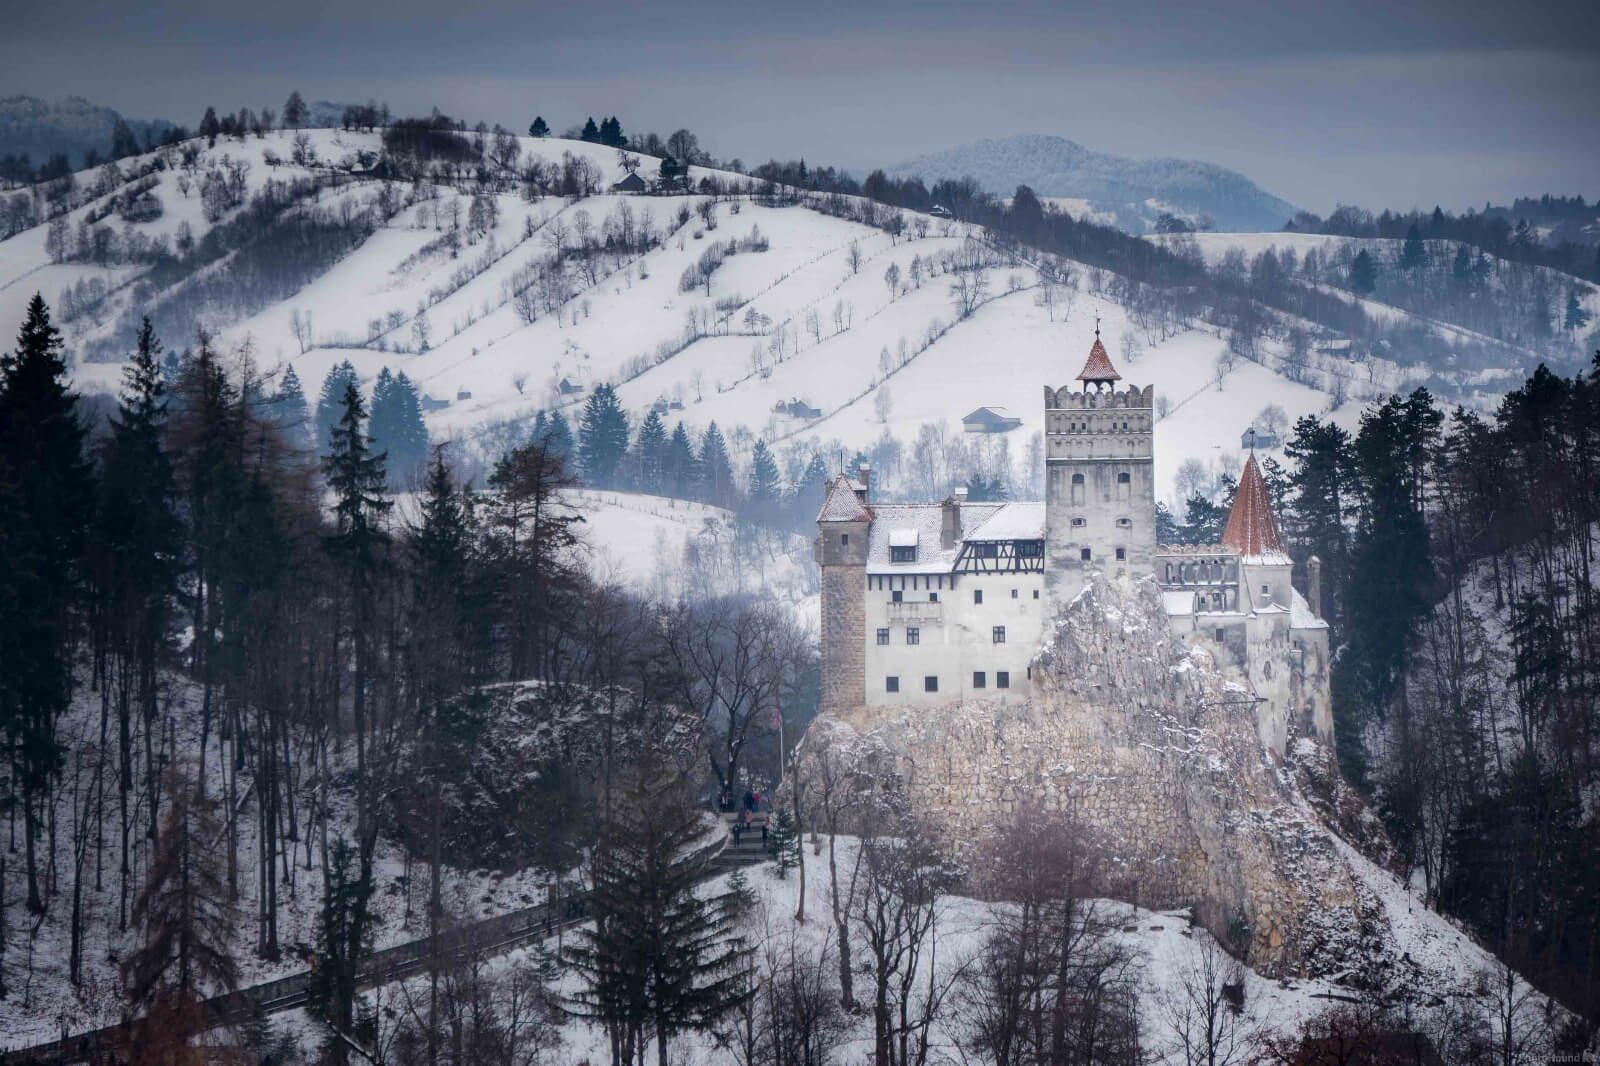 Image of Bran Castle by Daniel Rosca